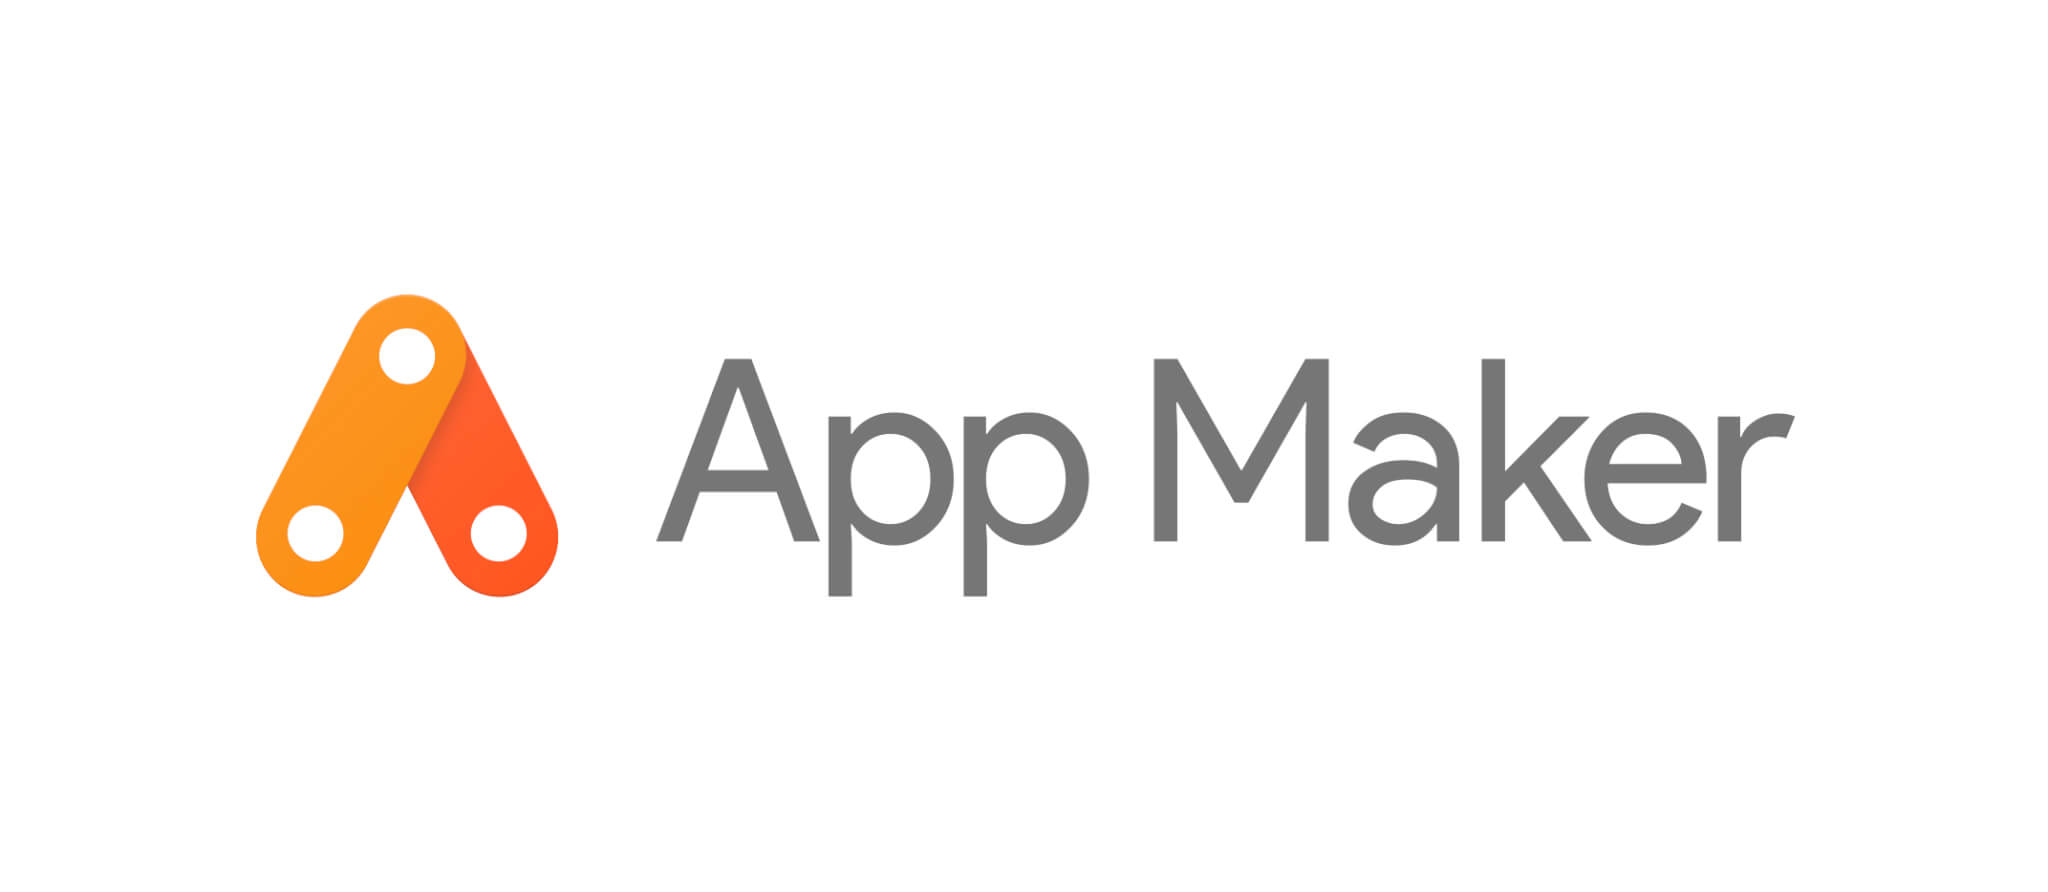 APPMAKR ، بهترین پلتفرم برای ساخت اپلیکیشن